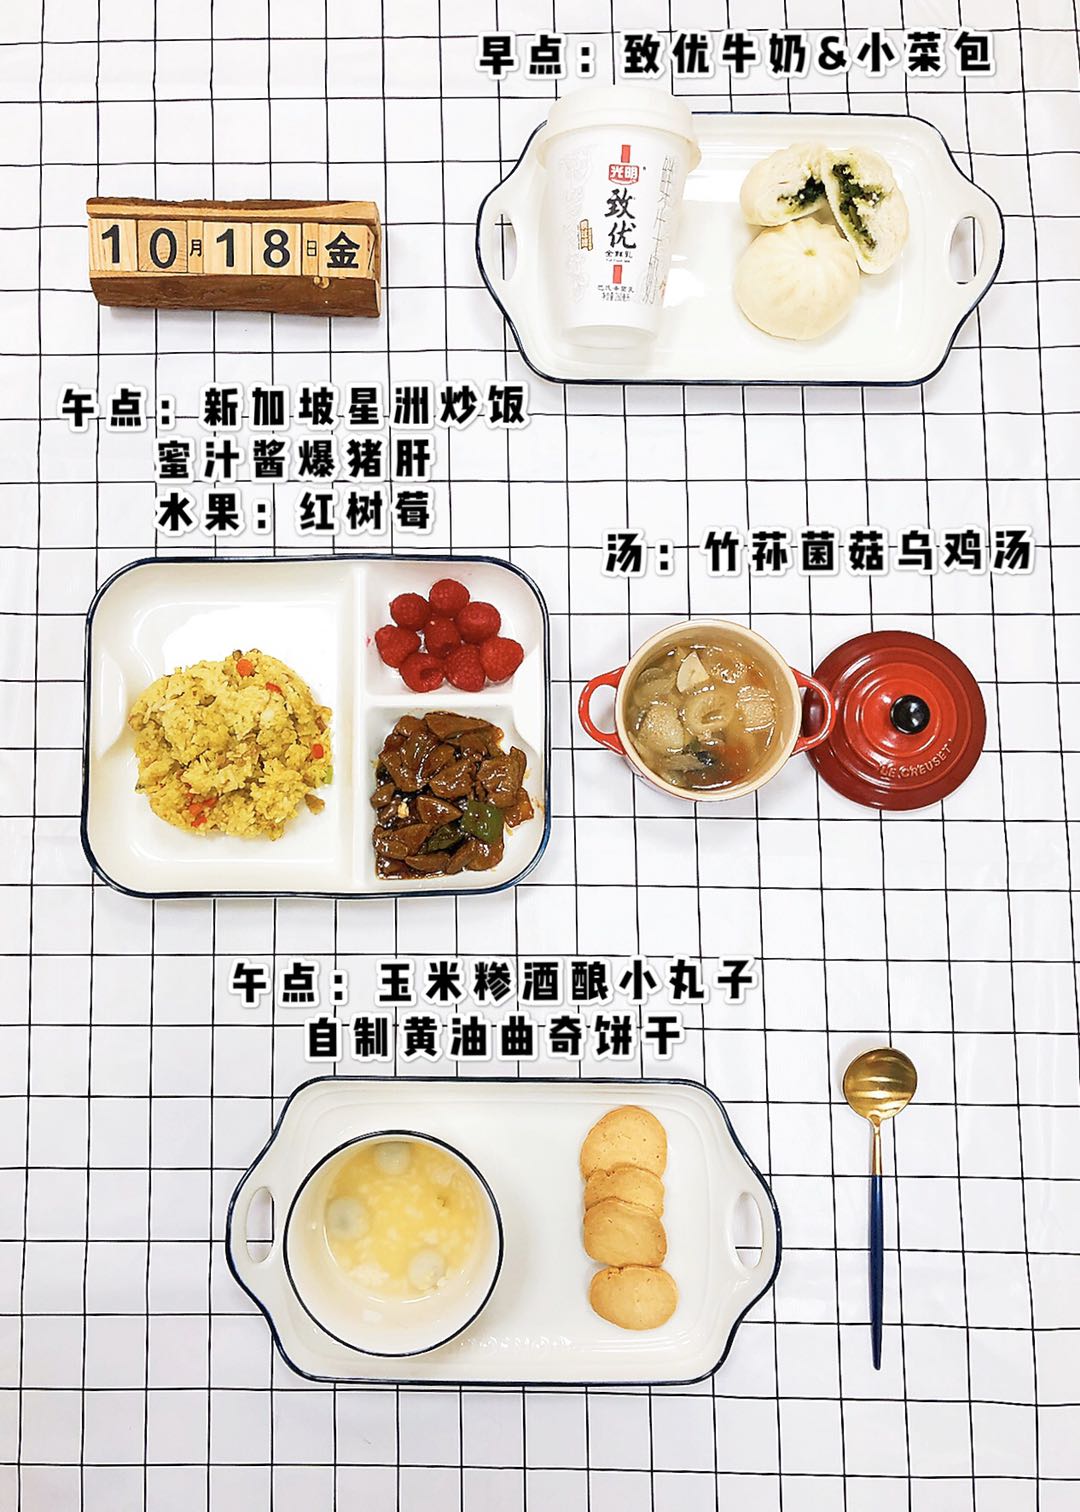 每周食谱 - 幼儿园 - 南京书人幼儿园